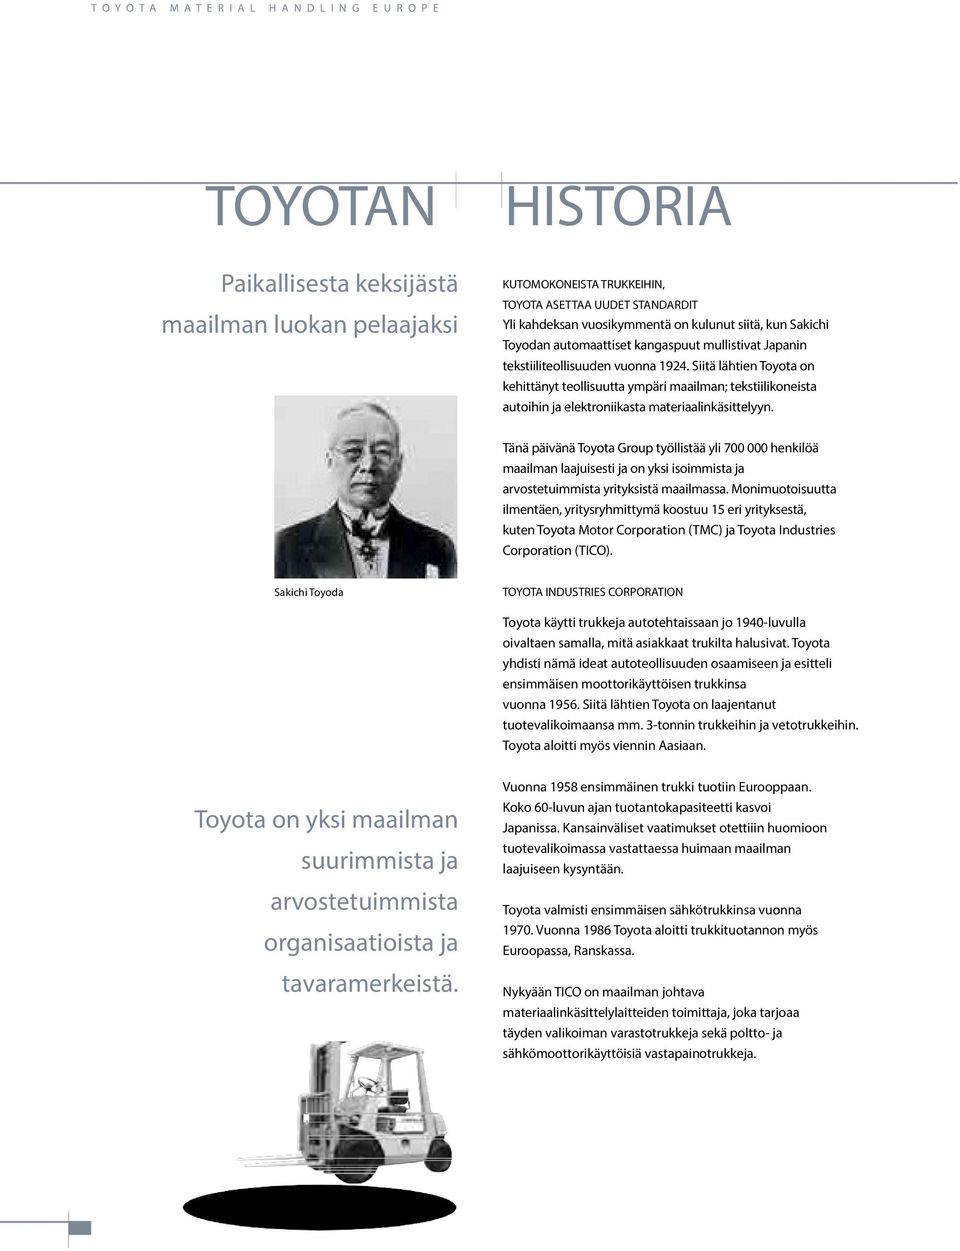 Siitä lähtien Toyota on kehittänyt teollisuutta ympäri maailman; tekstiilikoneista autoihin ja elektroniikasta materiaalinkäsittelyyn.